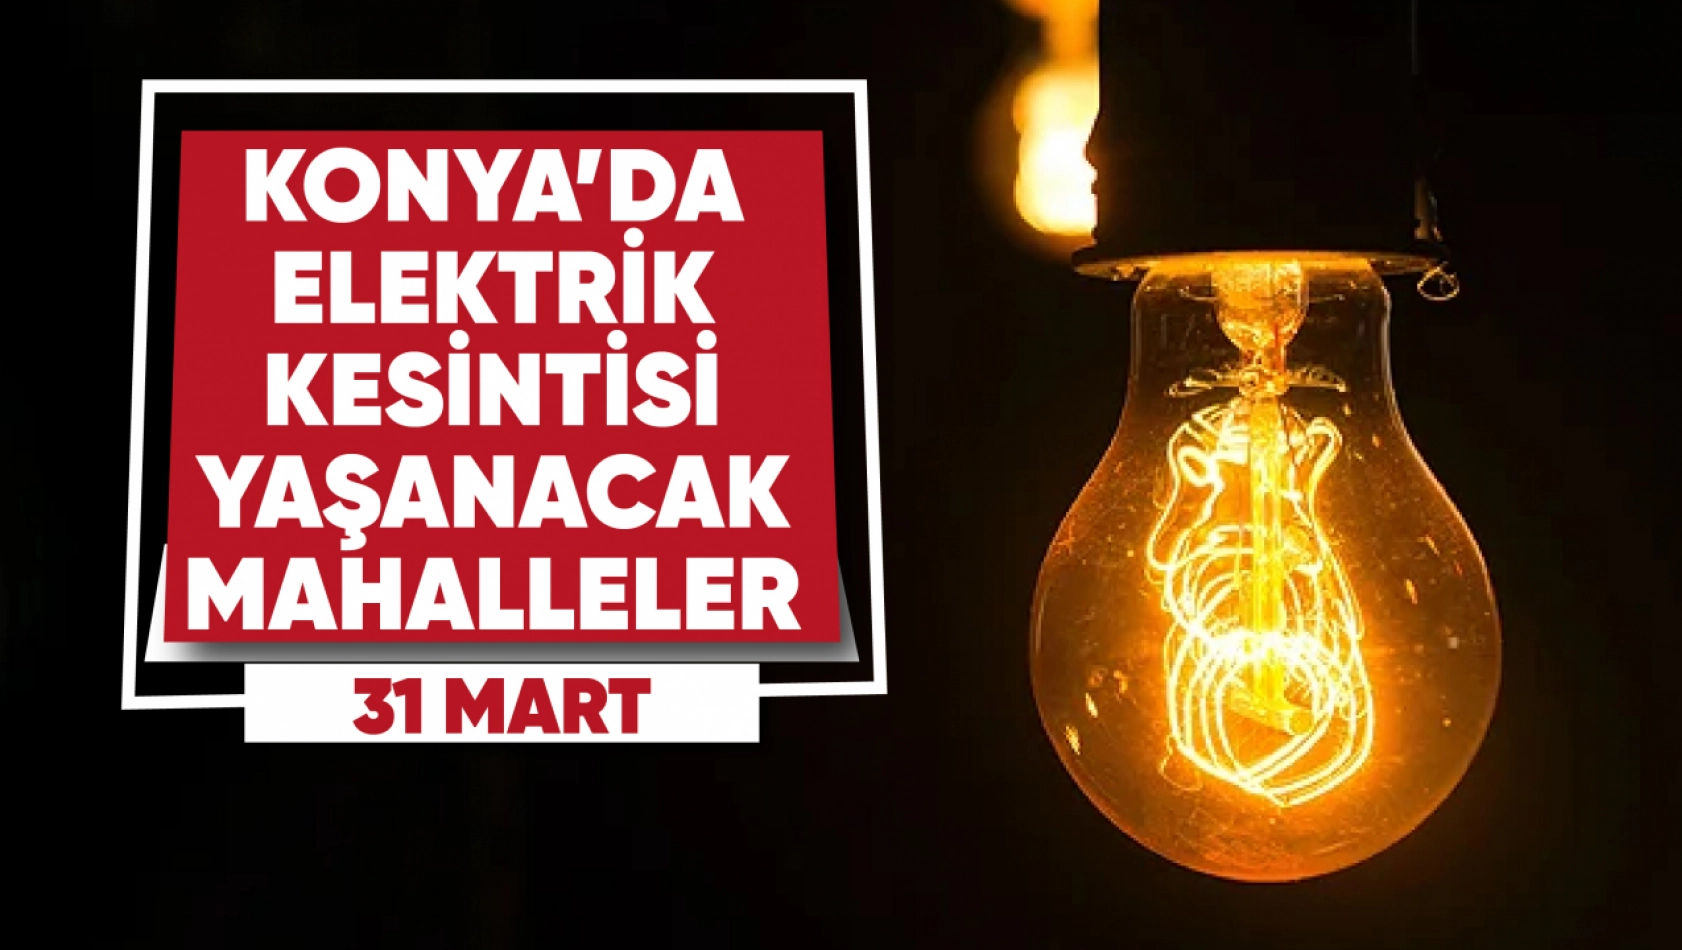 Konya'da Elektrik Kesintisi! Hangi Mahalleler Etkilenecek?